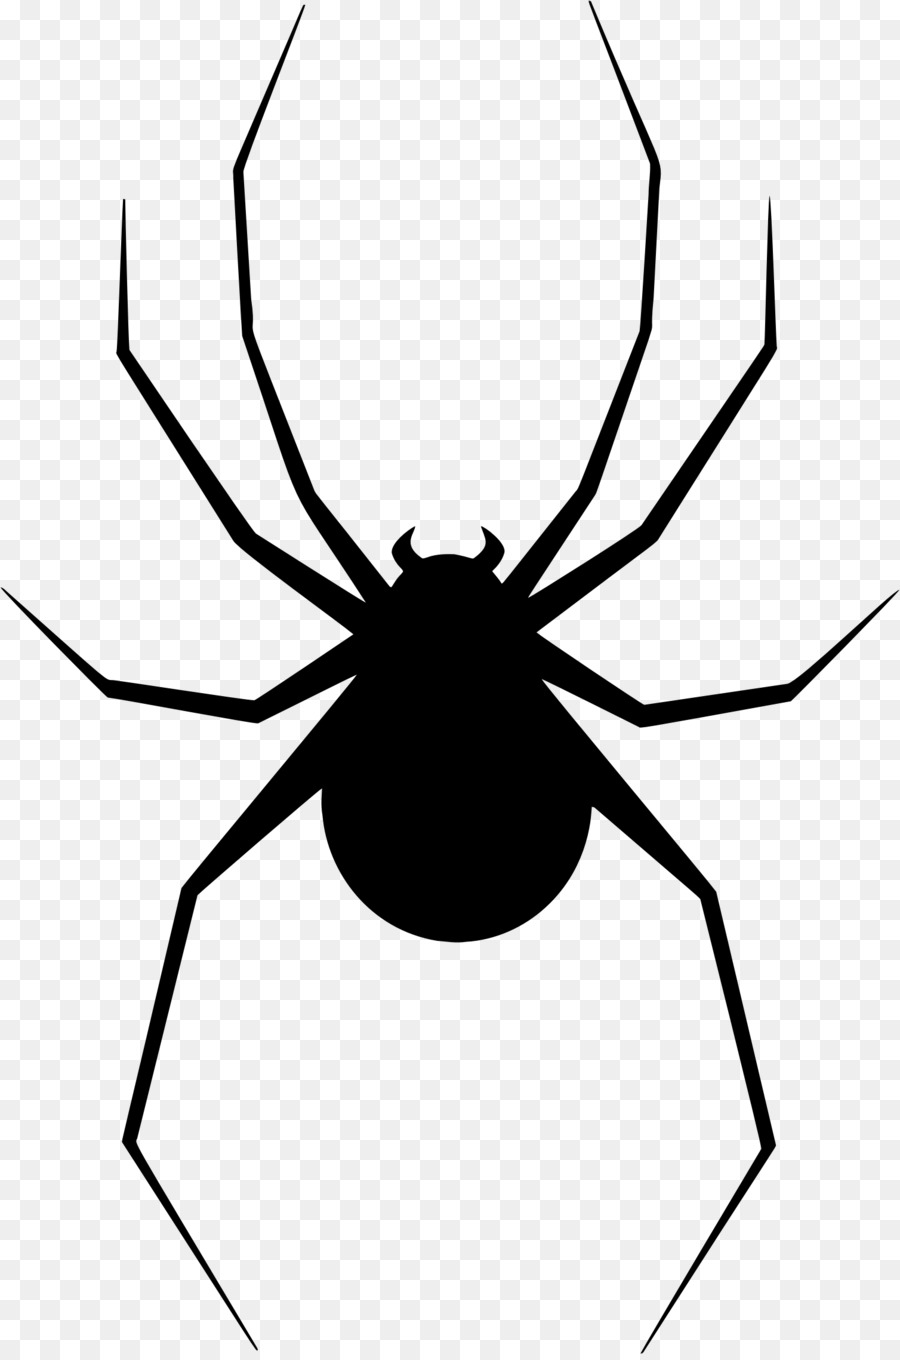 Spider web Clip art - scars png download - 1508*2268 - Free Transparent Spider png Download.